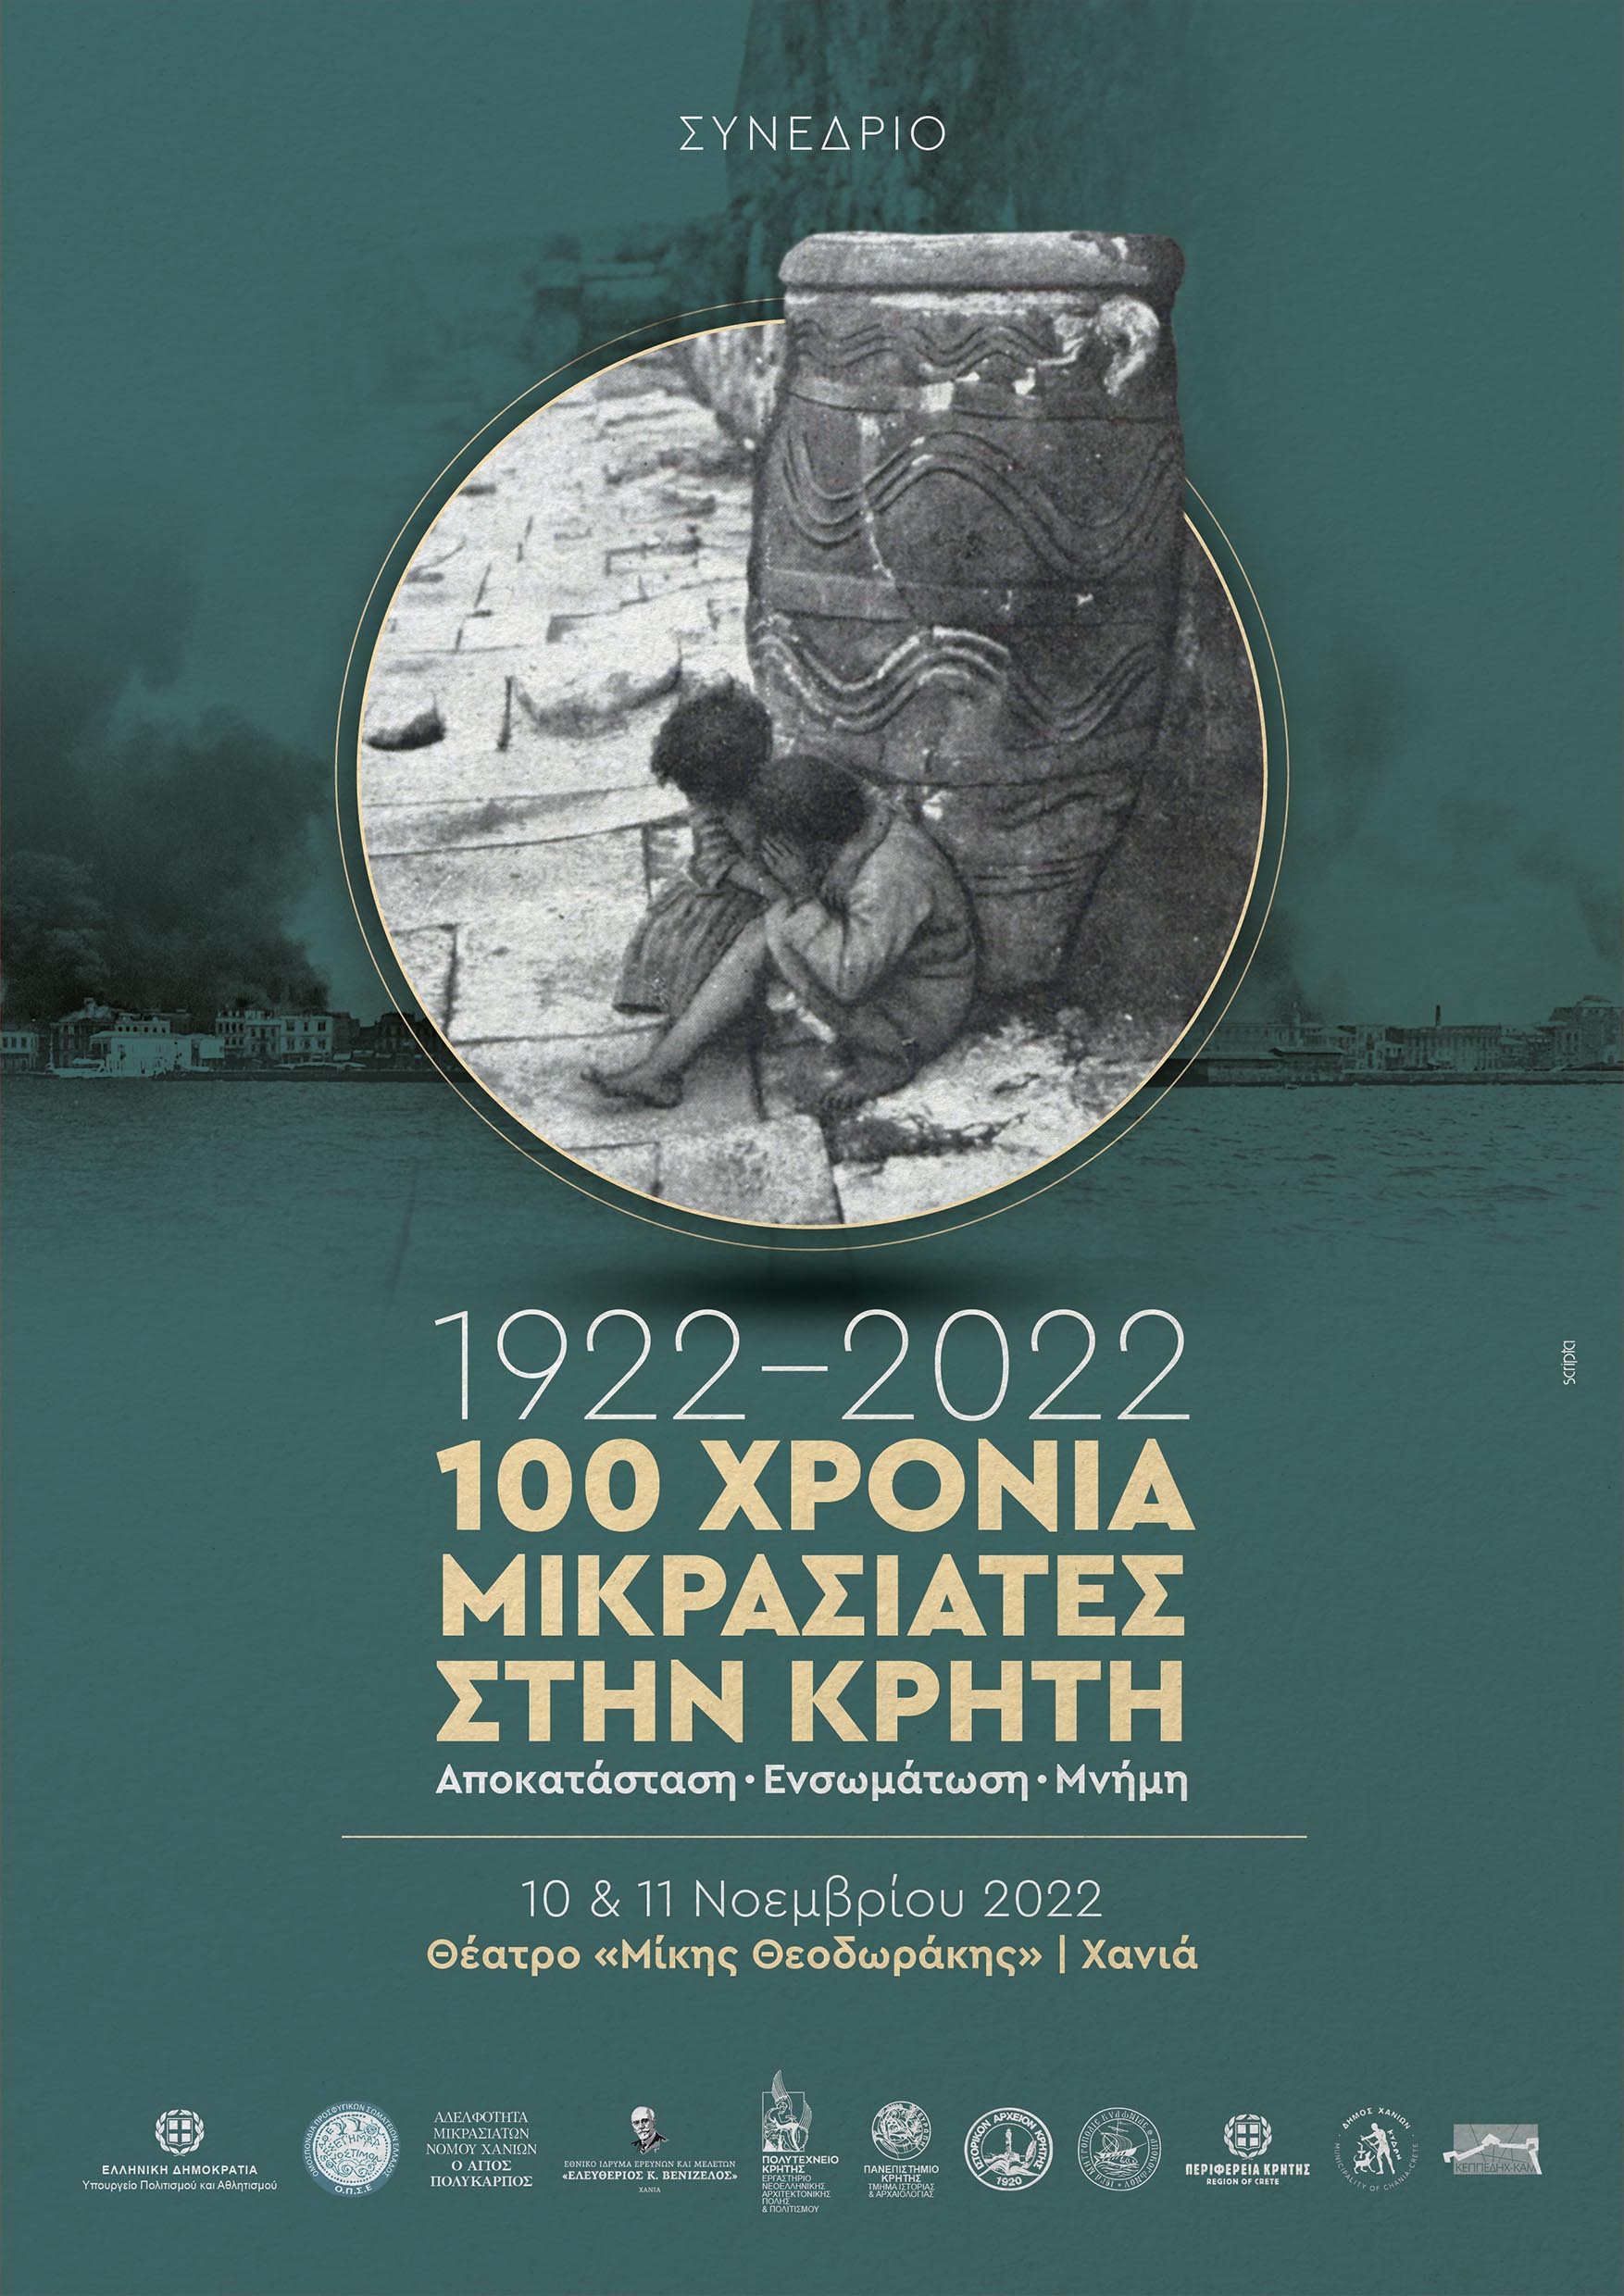 1922-2022, 100 χρόνια Μικρασιάτες στην Κρήτη:  Αποκατάσταση, Ενσωμάτωση, Μνήμη.